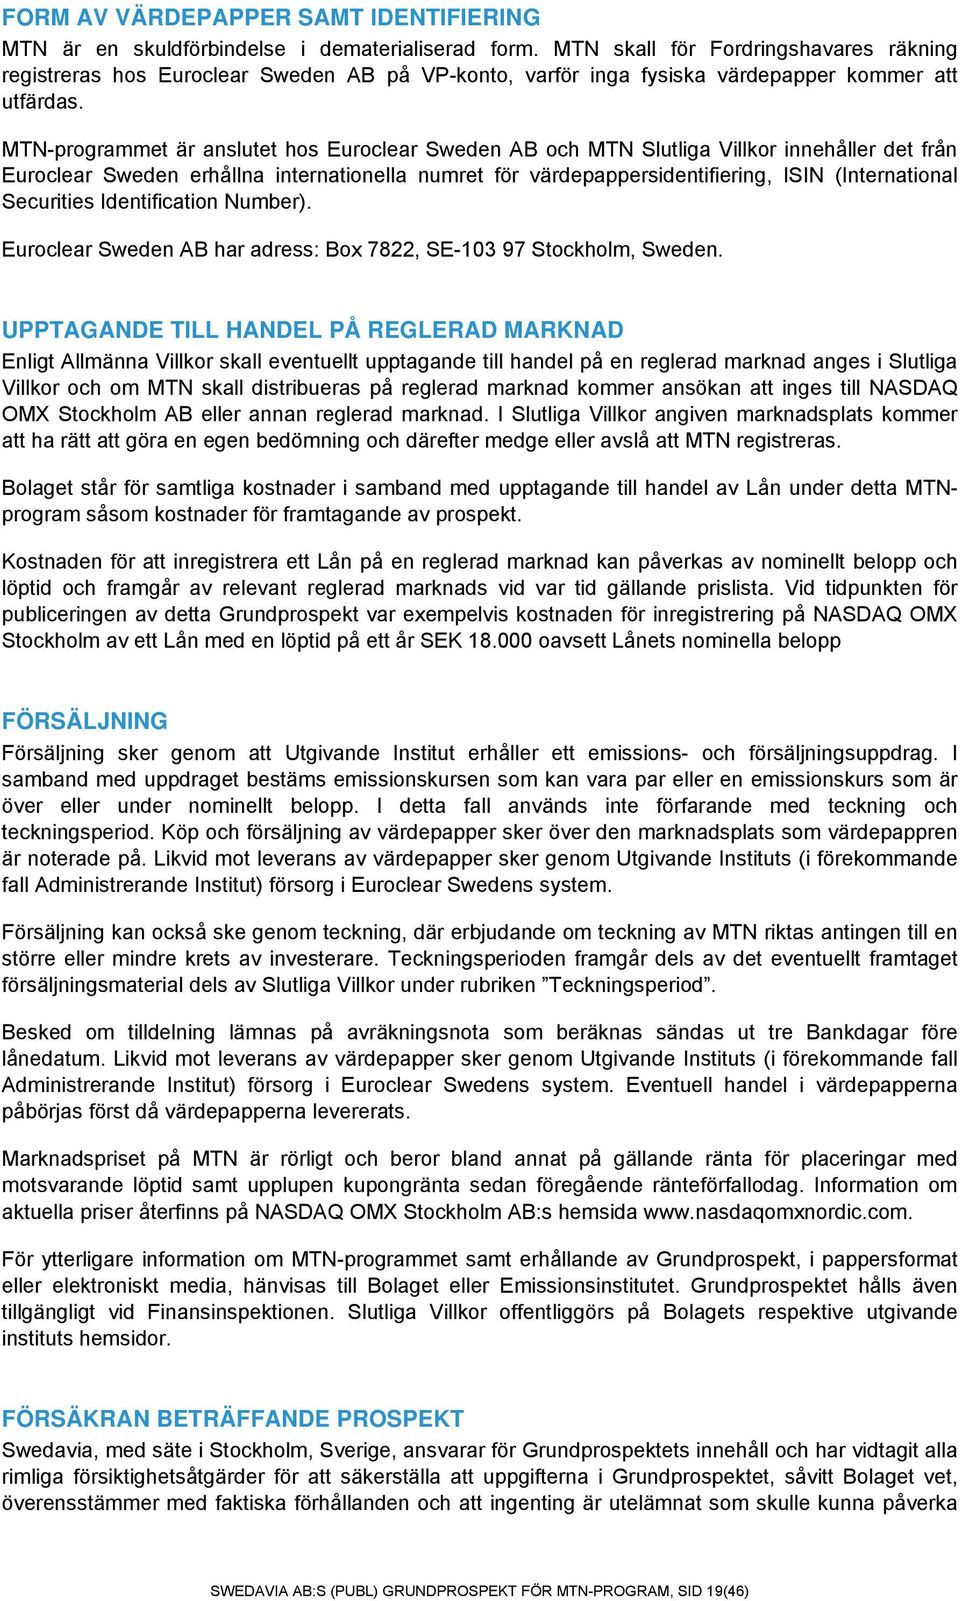 MTN-programmet är anslutet hos Euroclear Sweden AB och MTN Slutliga Villkor innehåller det från Euroclear Sweden erhållna internationella numret för värdepappersidentifiering, ISIN (International